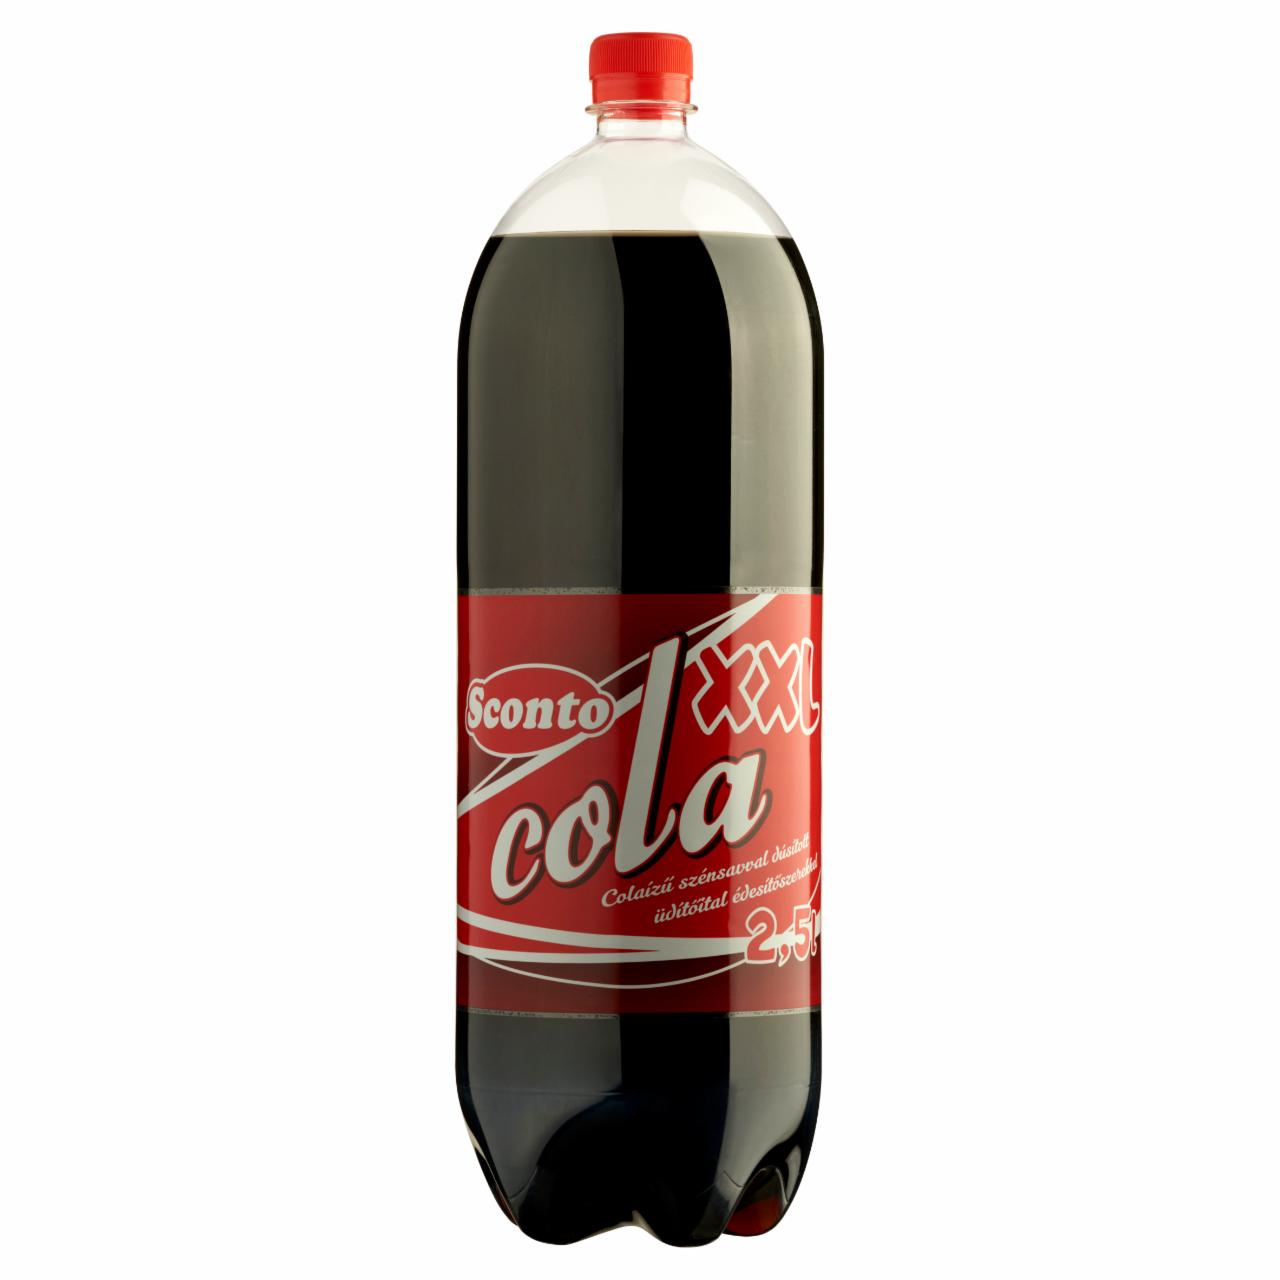 Képek - Sconto XXL energiamentes colaízű szénsavval dúsított üdítőital édesítőszerekkel 2,5 l